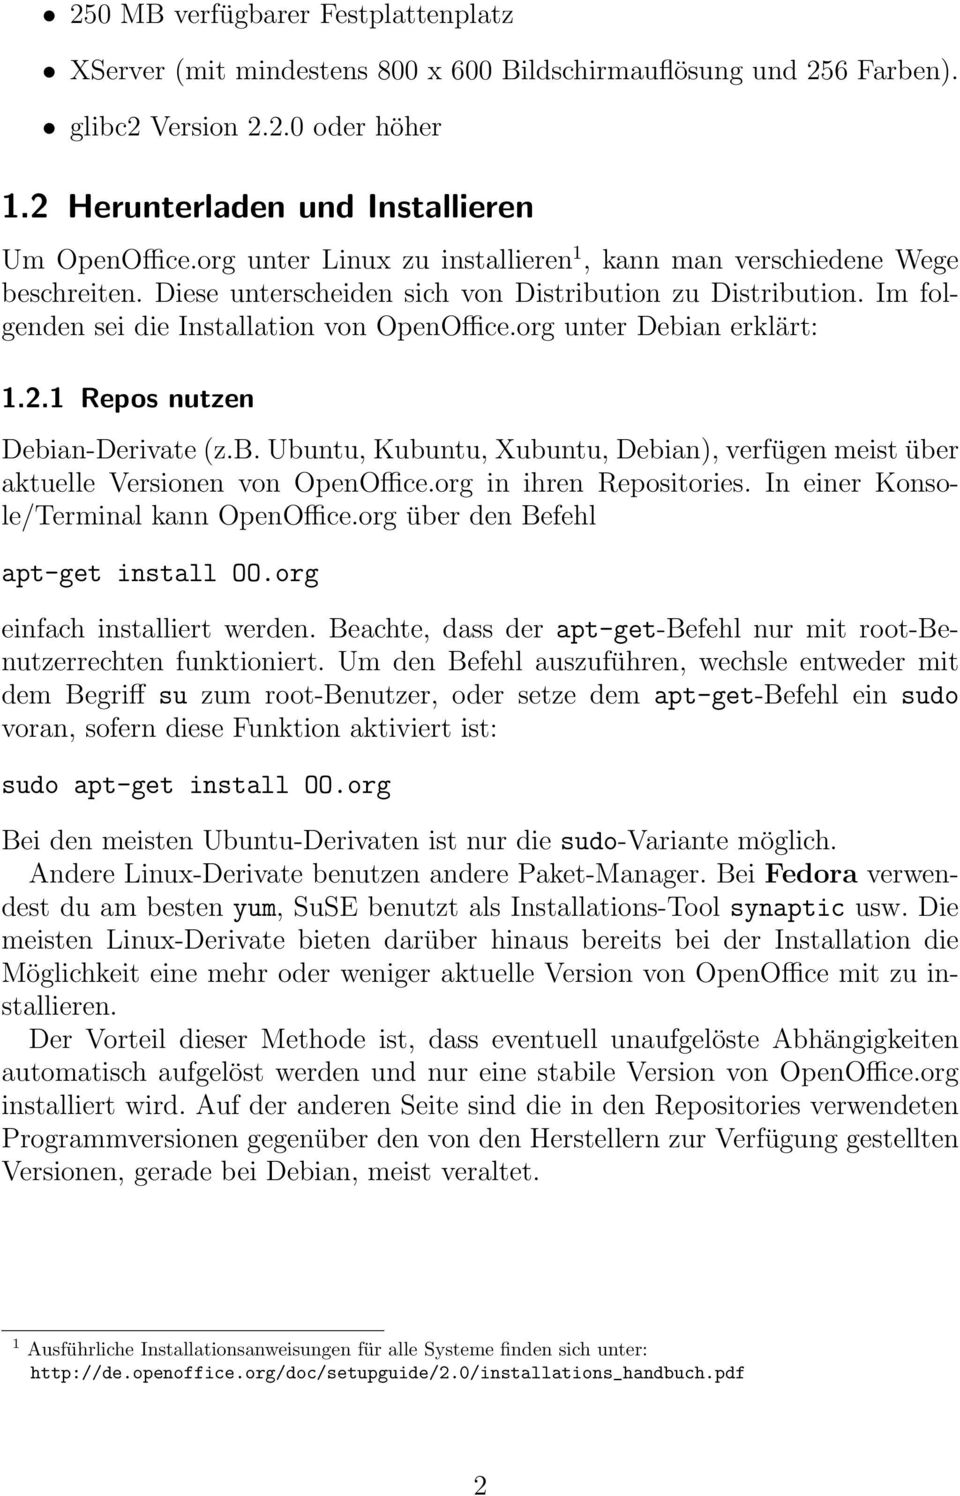 org unter Debian erklärt: 1.2.1 Repos nutzen Debian-Derivate (z.b. Ubuntu, Kubuntu, Xubuntu, Debian), verfügen meist über aktuelle Versionen von OpenOffice.org in ihren Repositories.